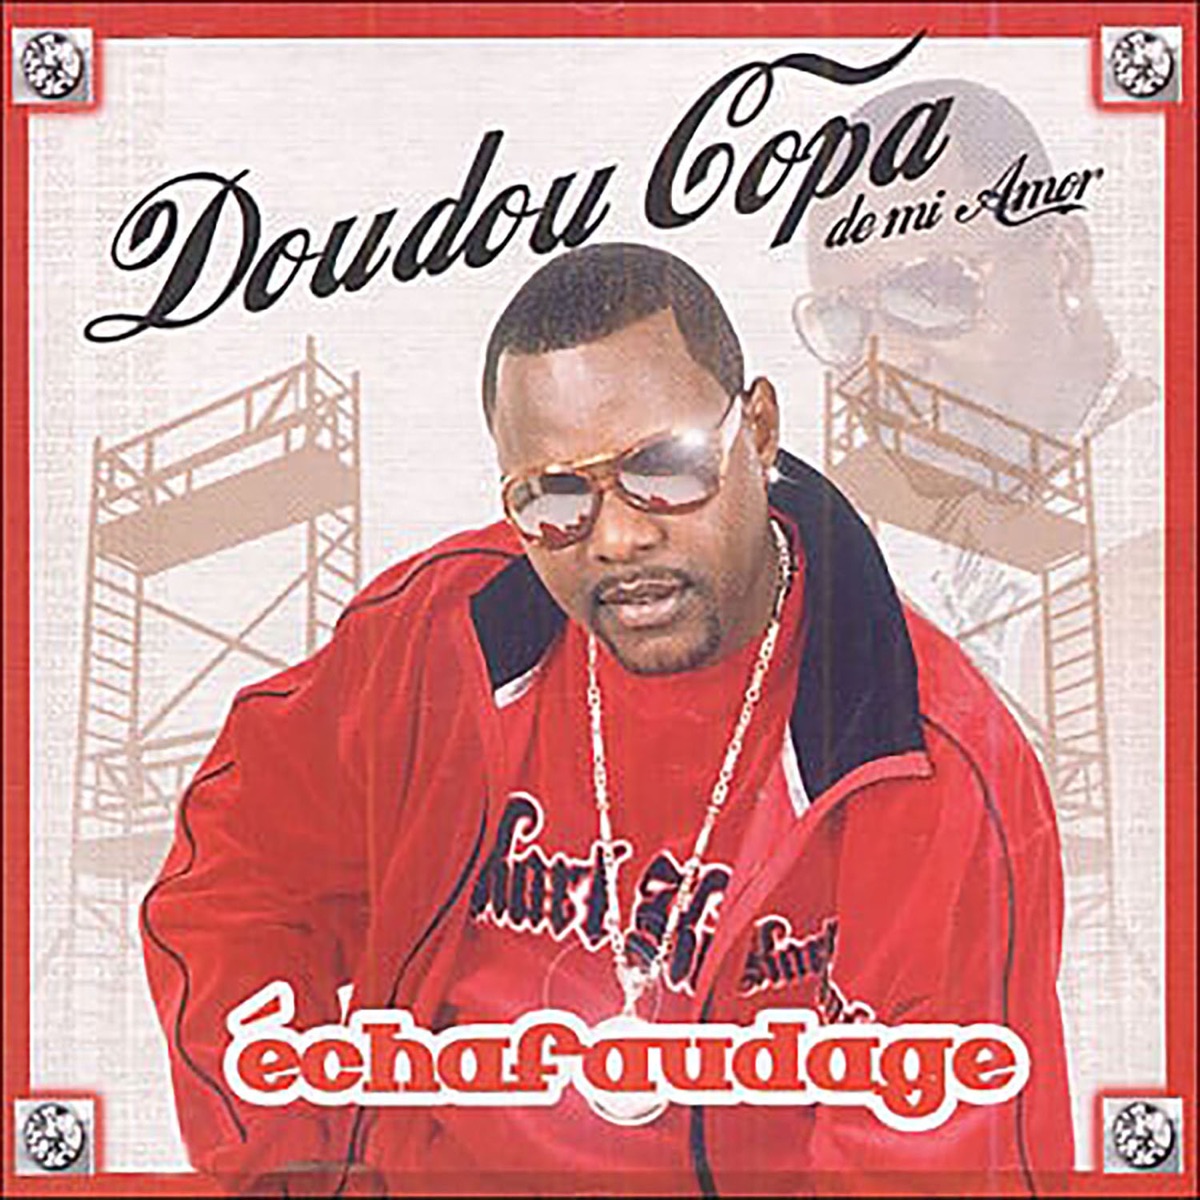 Échafaudage - Album by Doudou Copa - Apple Music